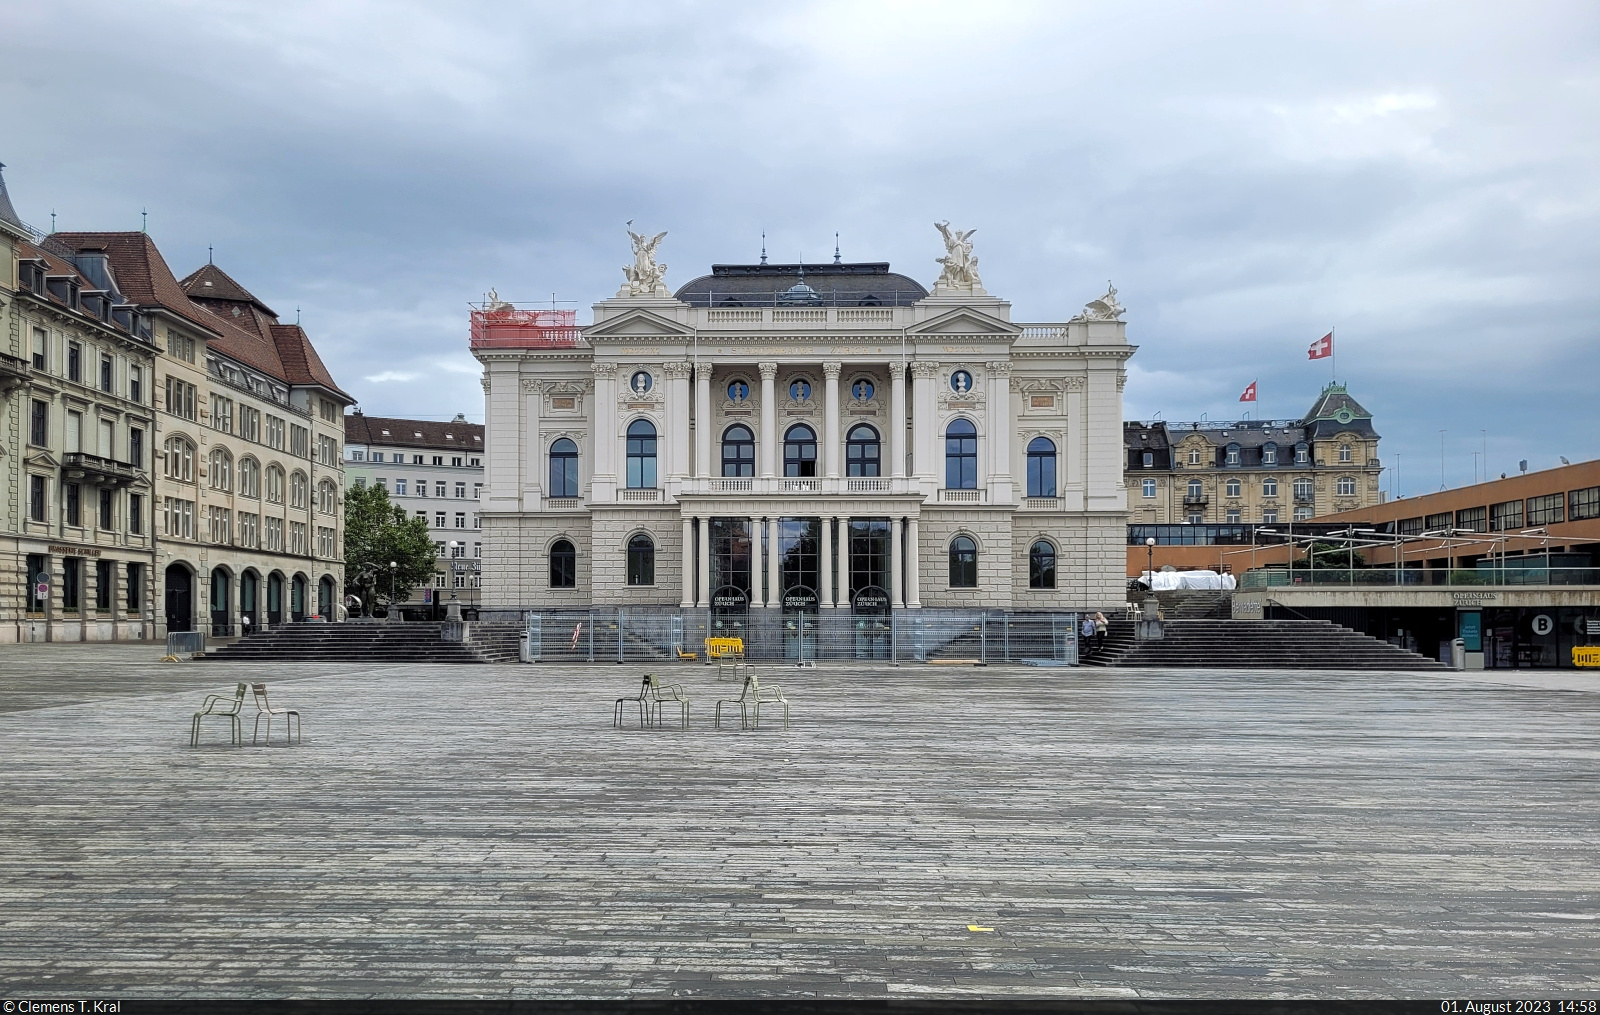 Opernhaus Zrich (CH) auf dem Sechselutenplatz, erffnet 1891.

🕓 1.8.2023 | 14:58 Uhr